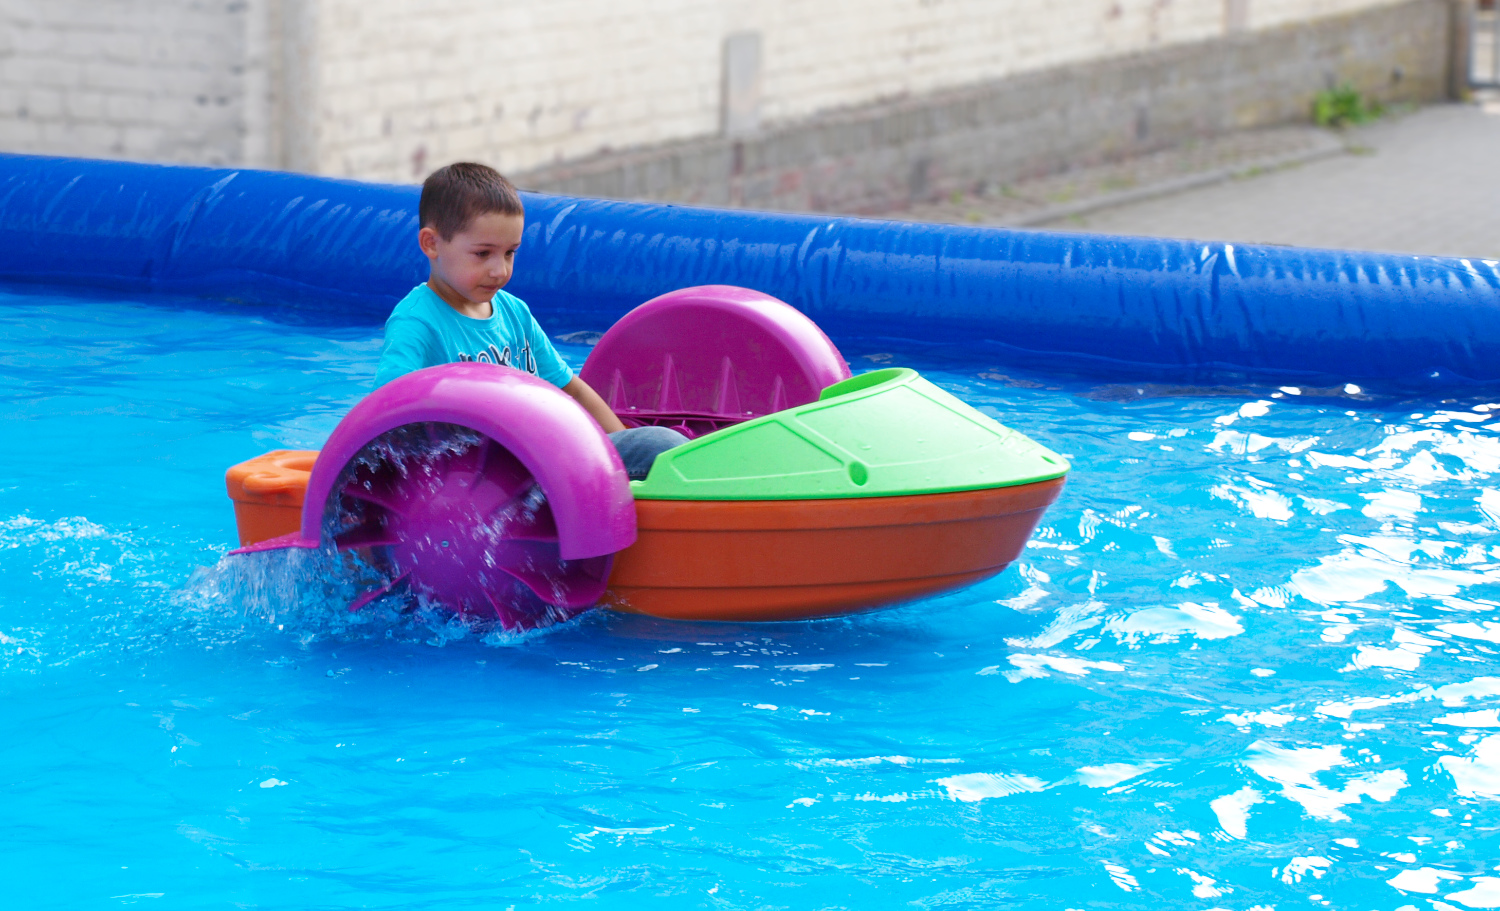 Kurbelboote als Mietartikel im Einsatz mit Kind auf dem Wasser, flacher Pool wird mit vermietet